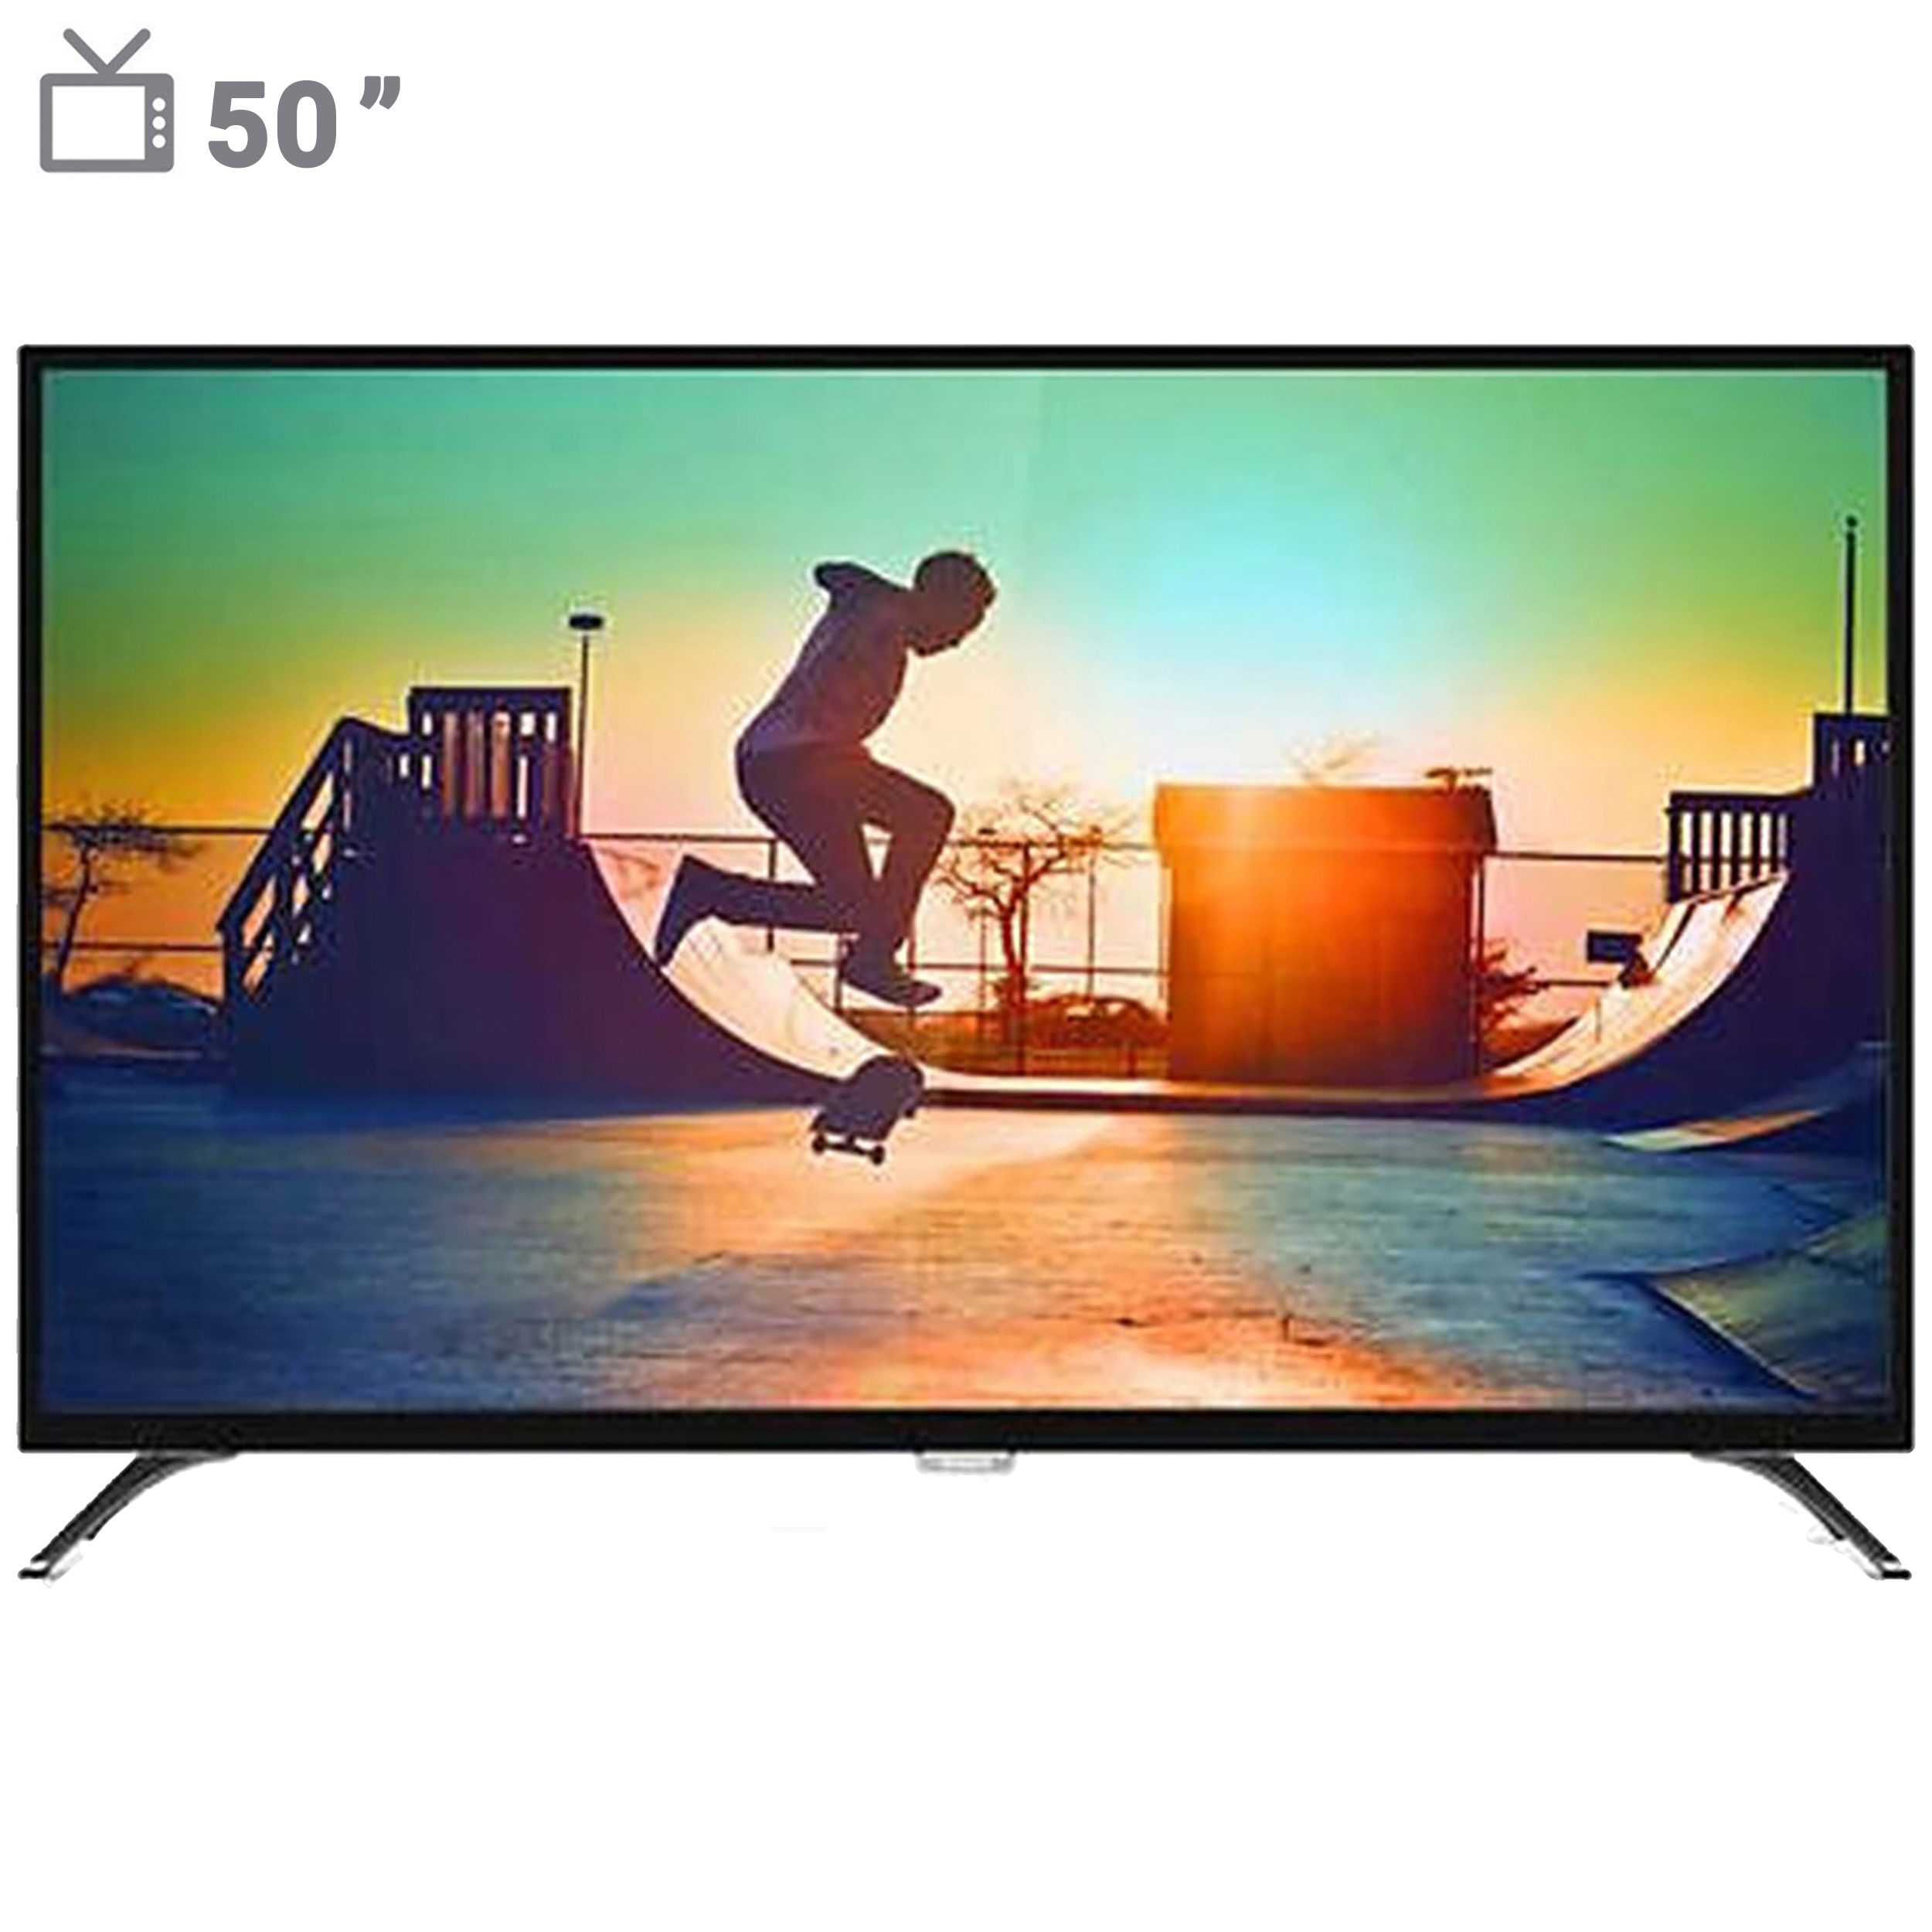 تلویزیون ال ای دی هوشمند فیلیپس مدل 50PUT6002 سایز 50 اینچ « فروشگاهاینترنتی این سرزمین | همکاری در فروش